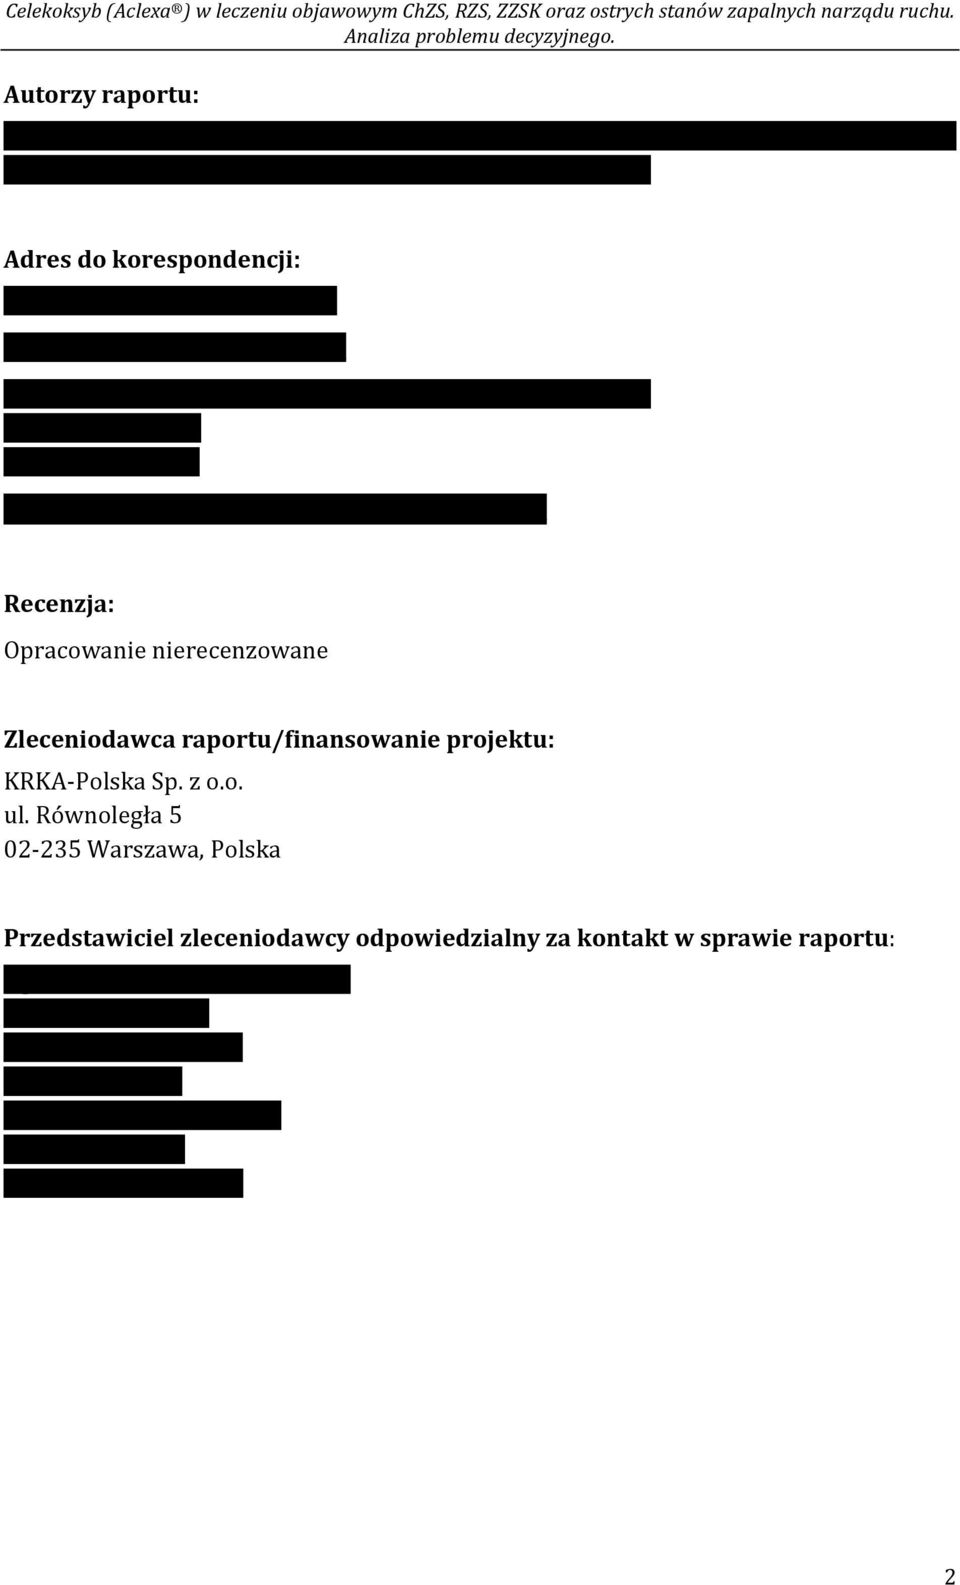 /fax +48 22 468 05 34, kontakt@healthquest.pl Recenzja: Opracowanie nierecenzowane Zleceniodawca raportu/finansowanie projektu: KRKA-Polska Sp. z o.o. ul.